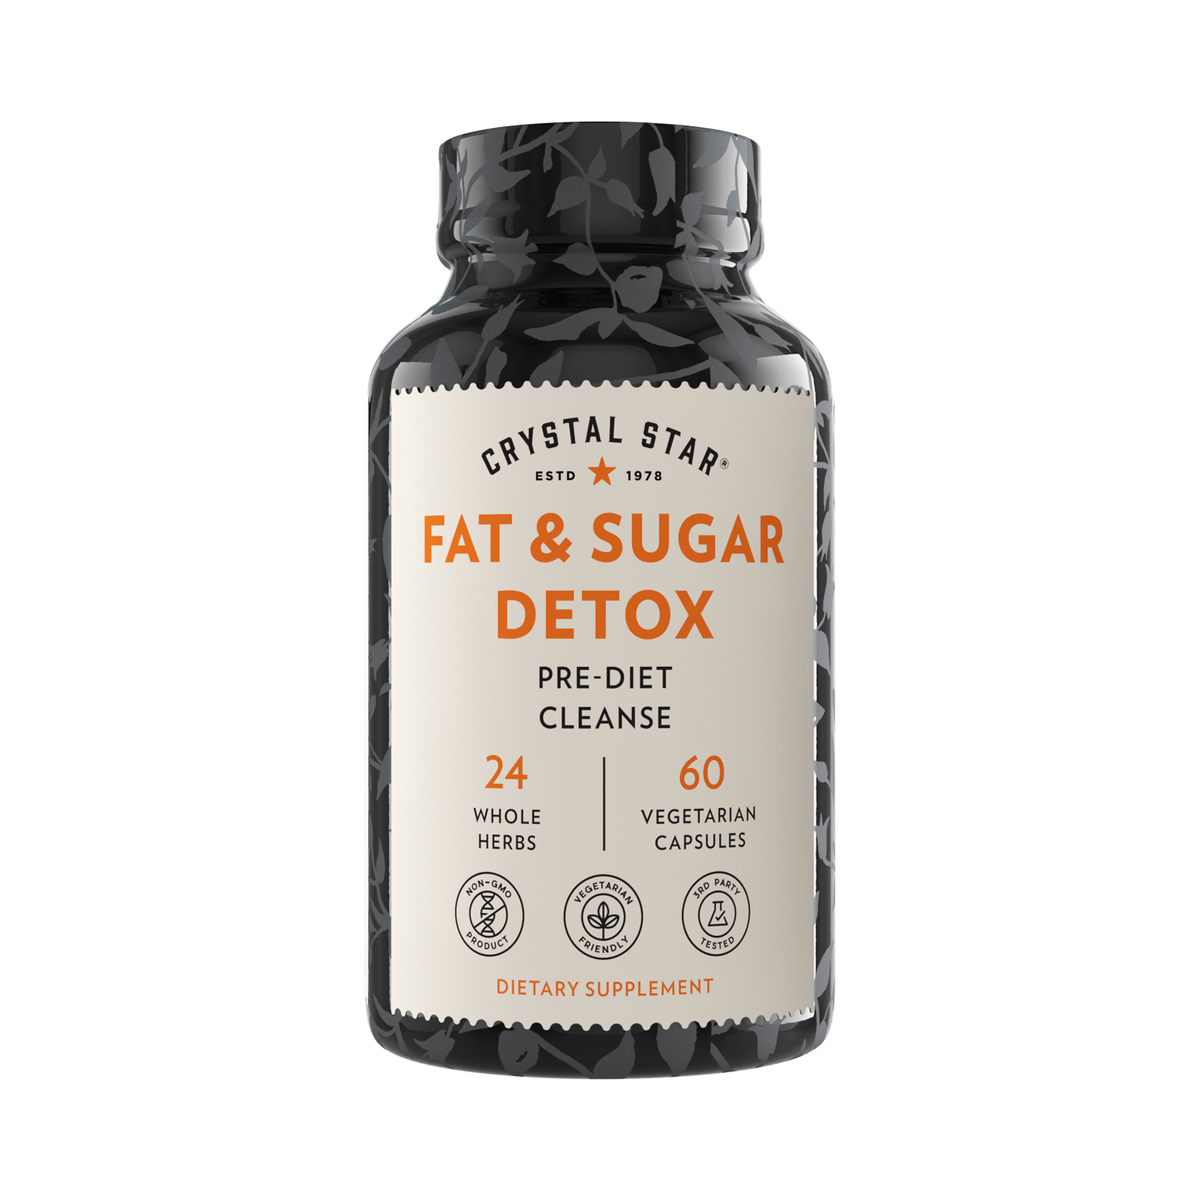 Fat &amp; Sugar Detox by Crystal Star